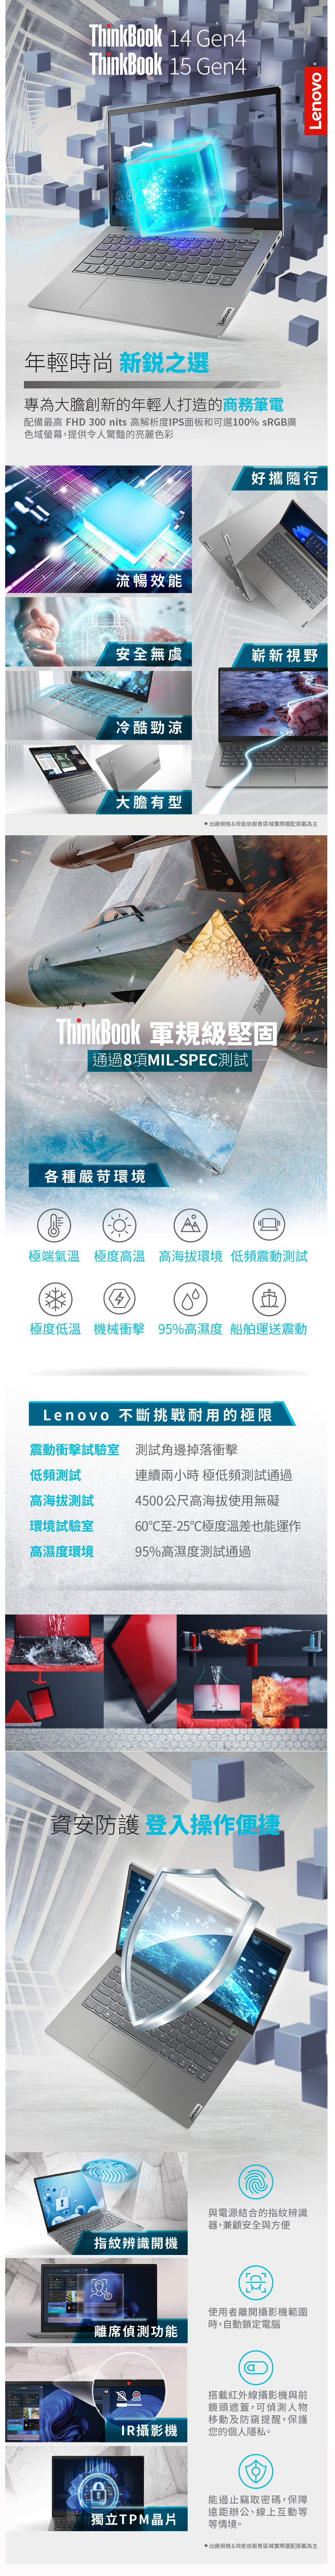 ThinkBook 14 Gen4ThinkBook 15 Gen4年輕時尚 新銳之選專為大膽創新的年輕人打造的商務筆電配備最高 FHD 3 nits 高解析度IPS面板和可選100% sRGB廣色域螢幕,提供令人驚豔的亮麗色彩流暢效能Lenovo好攜隨行安全無虞嶄新視野冷酷勁涼大膽有型出廠規格&效能依販售區域實際選配搭載為主ThinkBook 軍規級堅固通過8項MIL-SPEC測試LenovoLenovo各種嚴苛環境極端氣溫極度高溫高海拔環境 低頻震動測試400極度低溫 機械衝擊 95%高濕度 船舶運送震動Lenovo 不斷挑戰耐用的極限震動衝擊試驗室 測試邊掉落衝擊低頻測試高海拔測試環境試驗室高濕度環境連續兩小時 極低頻測試通過4500公尺高海拔使用無礙60至-25℃極度溫差也能運作95%高濕度測試通過資安防護登入操作指紋辨識開機離席偵測功能Lenovo與電源結合的指紋辨識器,兼顧安全與方便使用者離開攝影機範圍時,自動鎖定電腦搭載紅外線攝影機與前鏡頭遮蓋,可偵測人物移動及防窺提醒,保護IR攝影機您的個人隱私。獨立TPM晶片能遏止竊取密碼,保障遠距辦公、線上互動等等情境。出廠規格&效能依販售區域實際選配搭載為主Lenovo